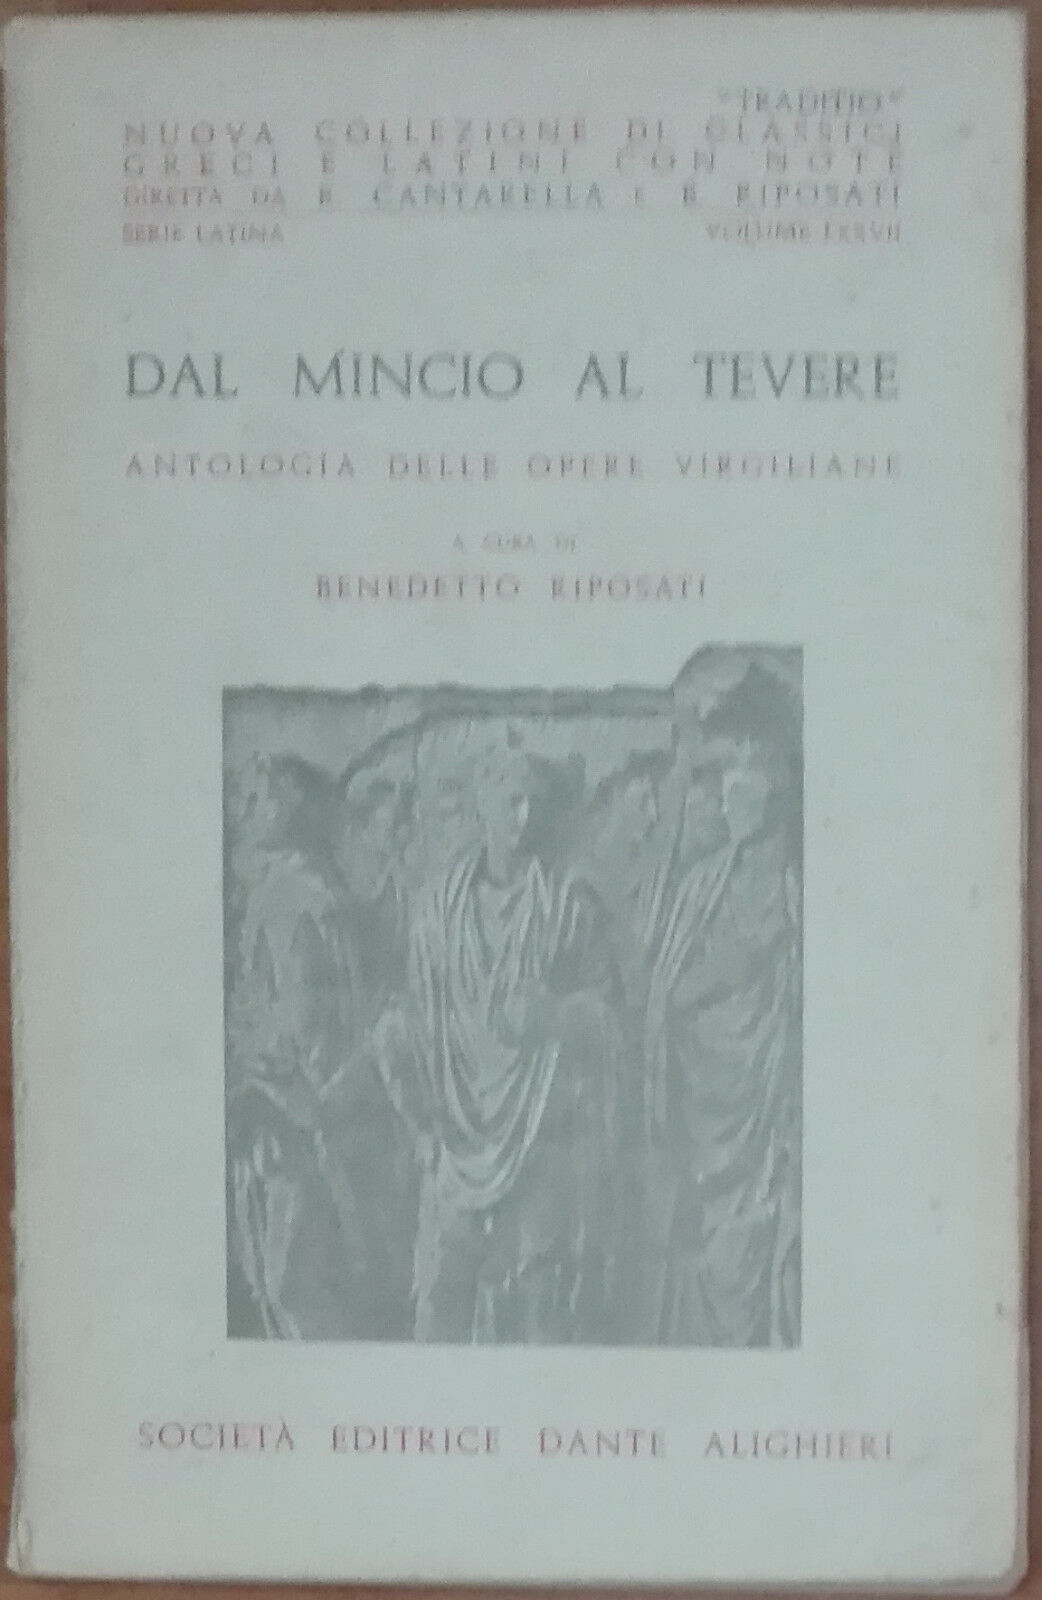 Dal Mincio al Tevere-Benedetto Riposati-Societ? editrice Dante Alighieri,1969-A